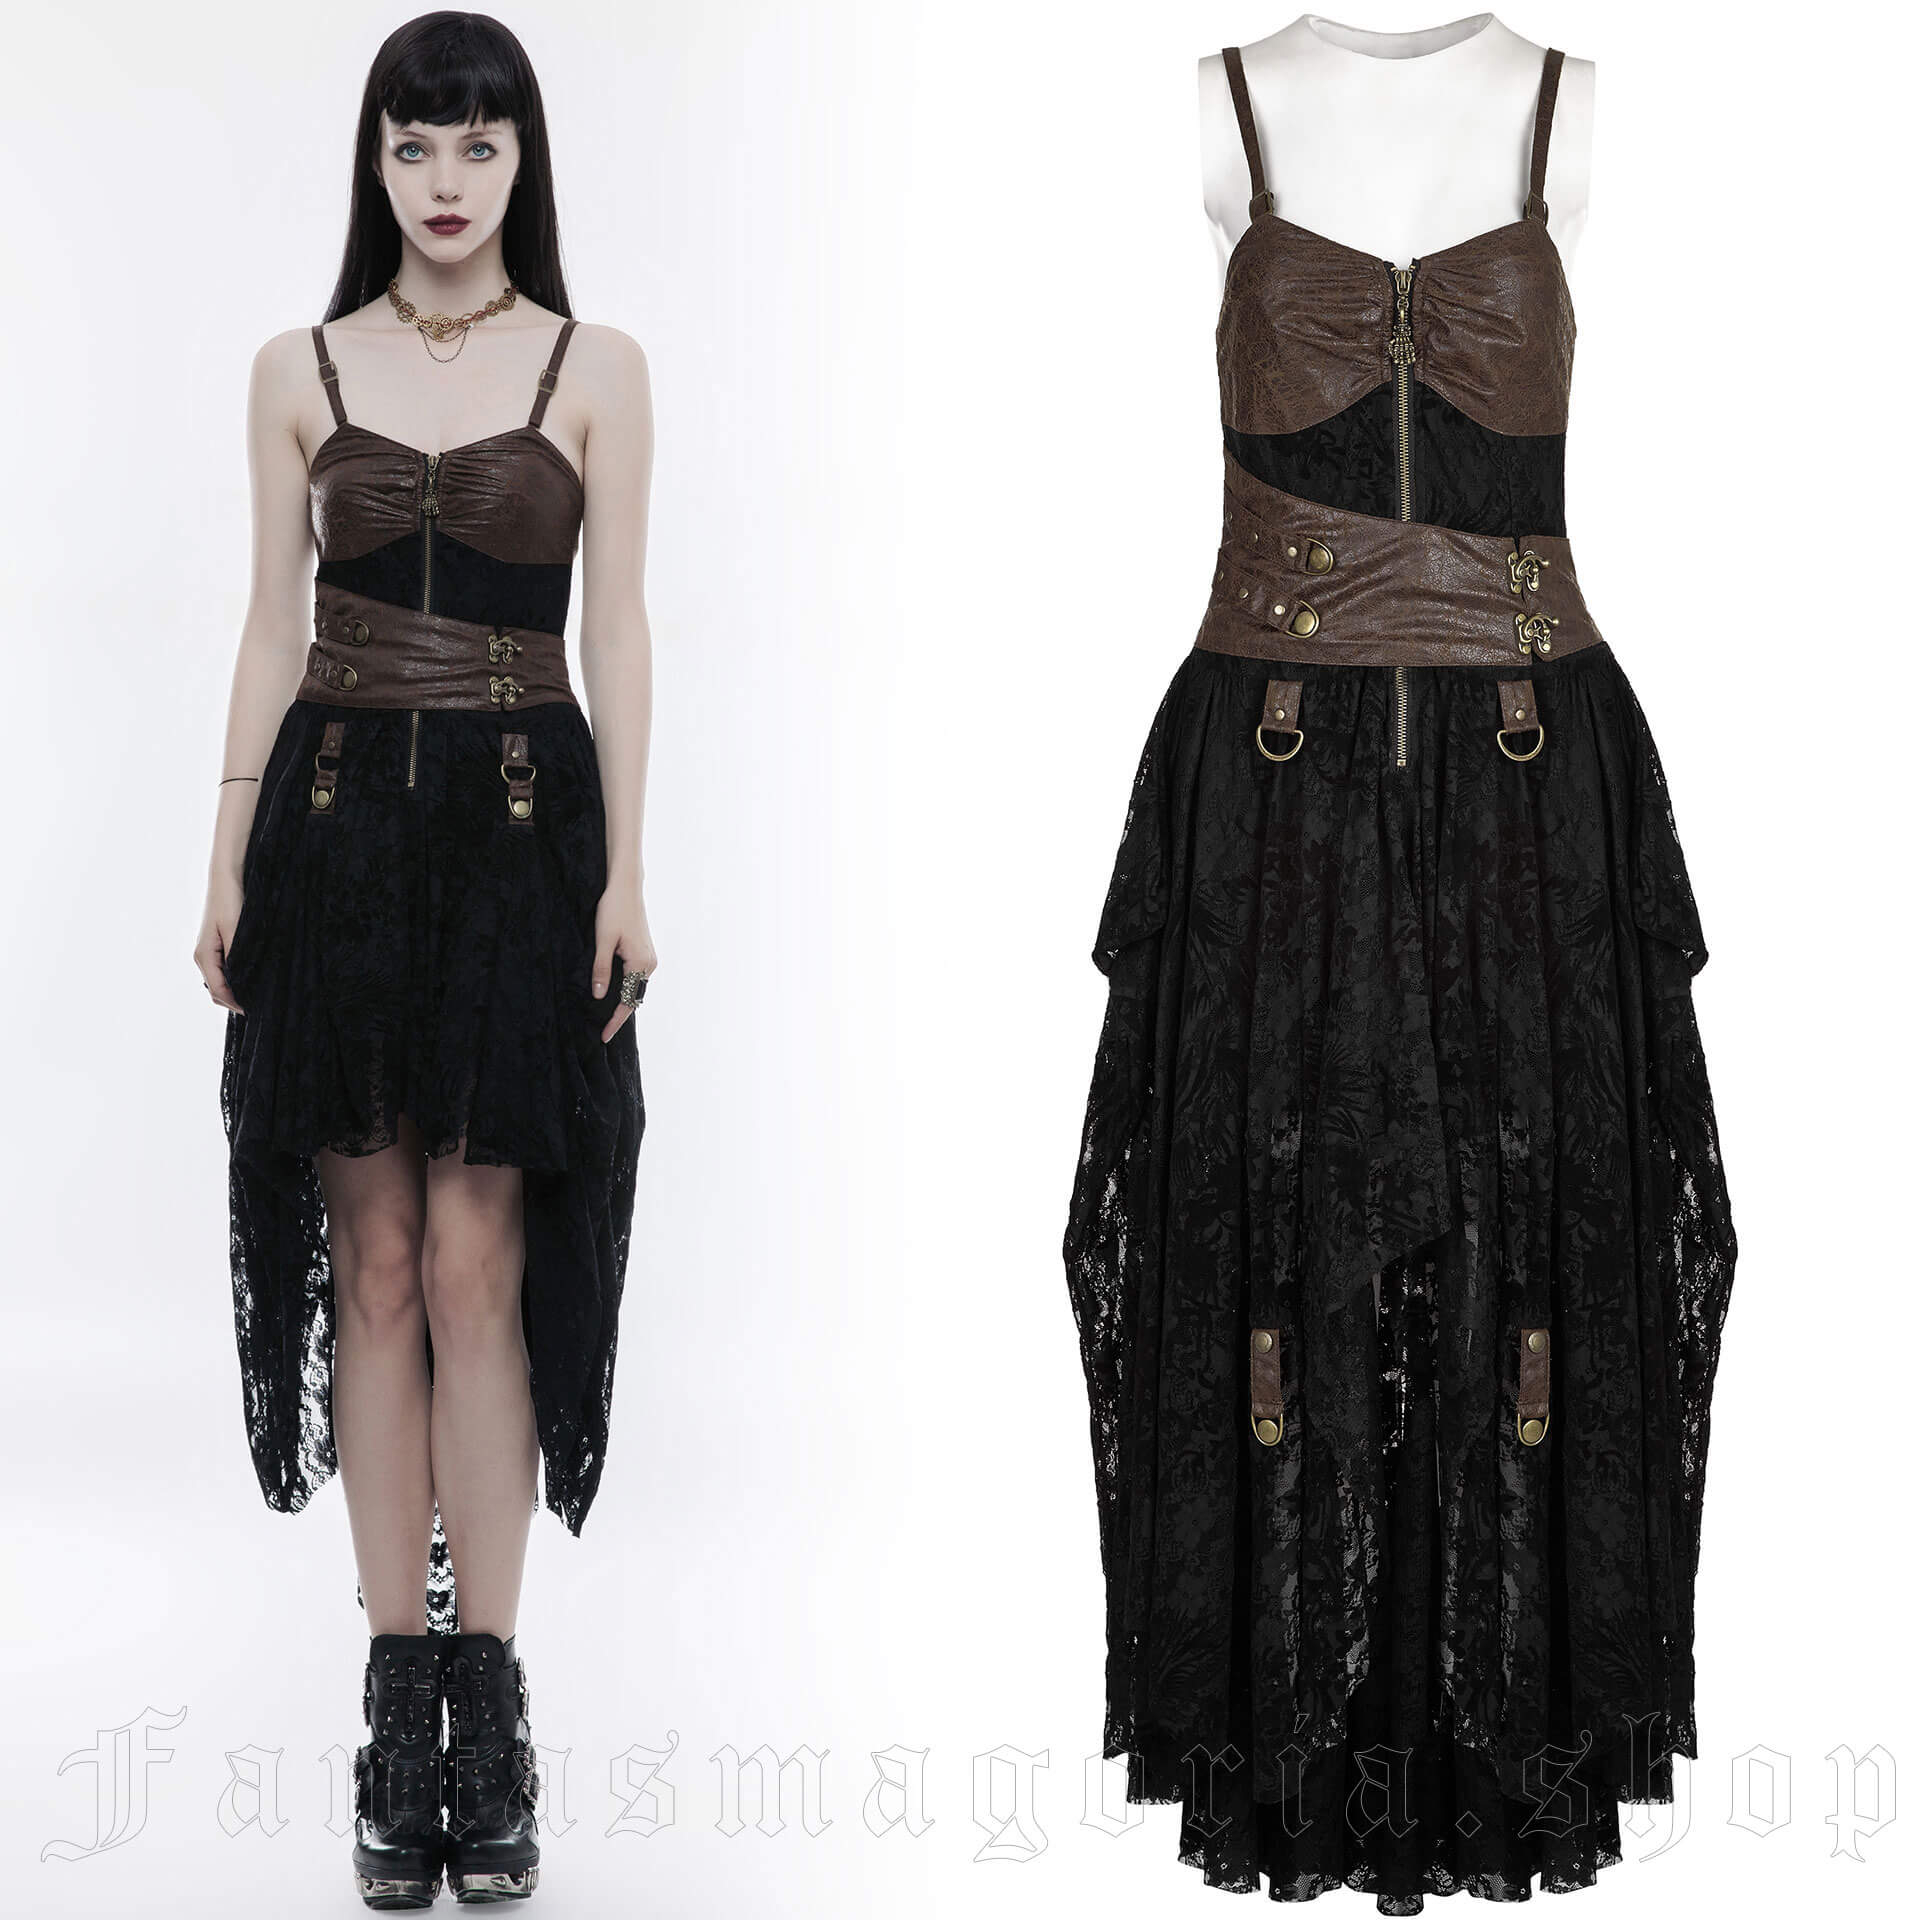 Harpy Dress Black-Brown - Punk Rave - WQ-345/CO 1